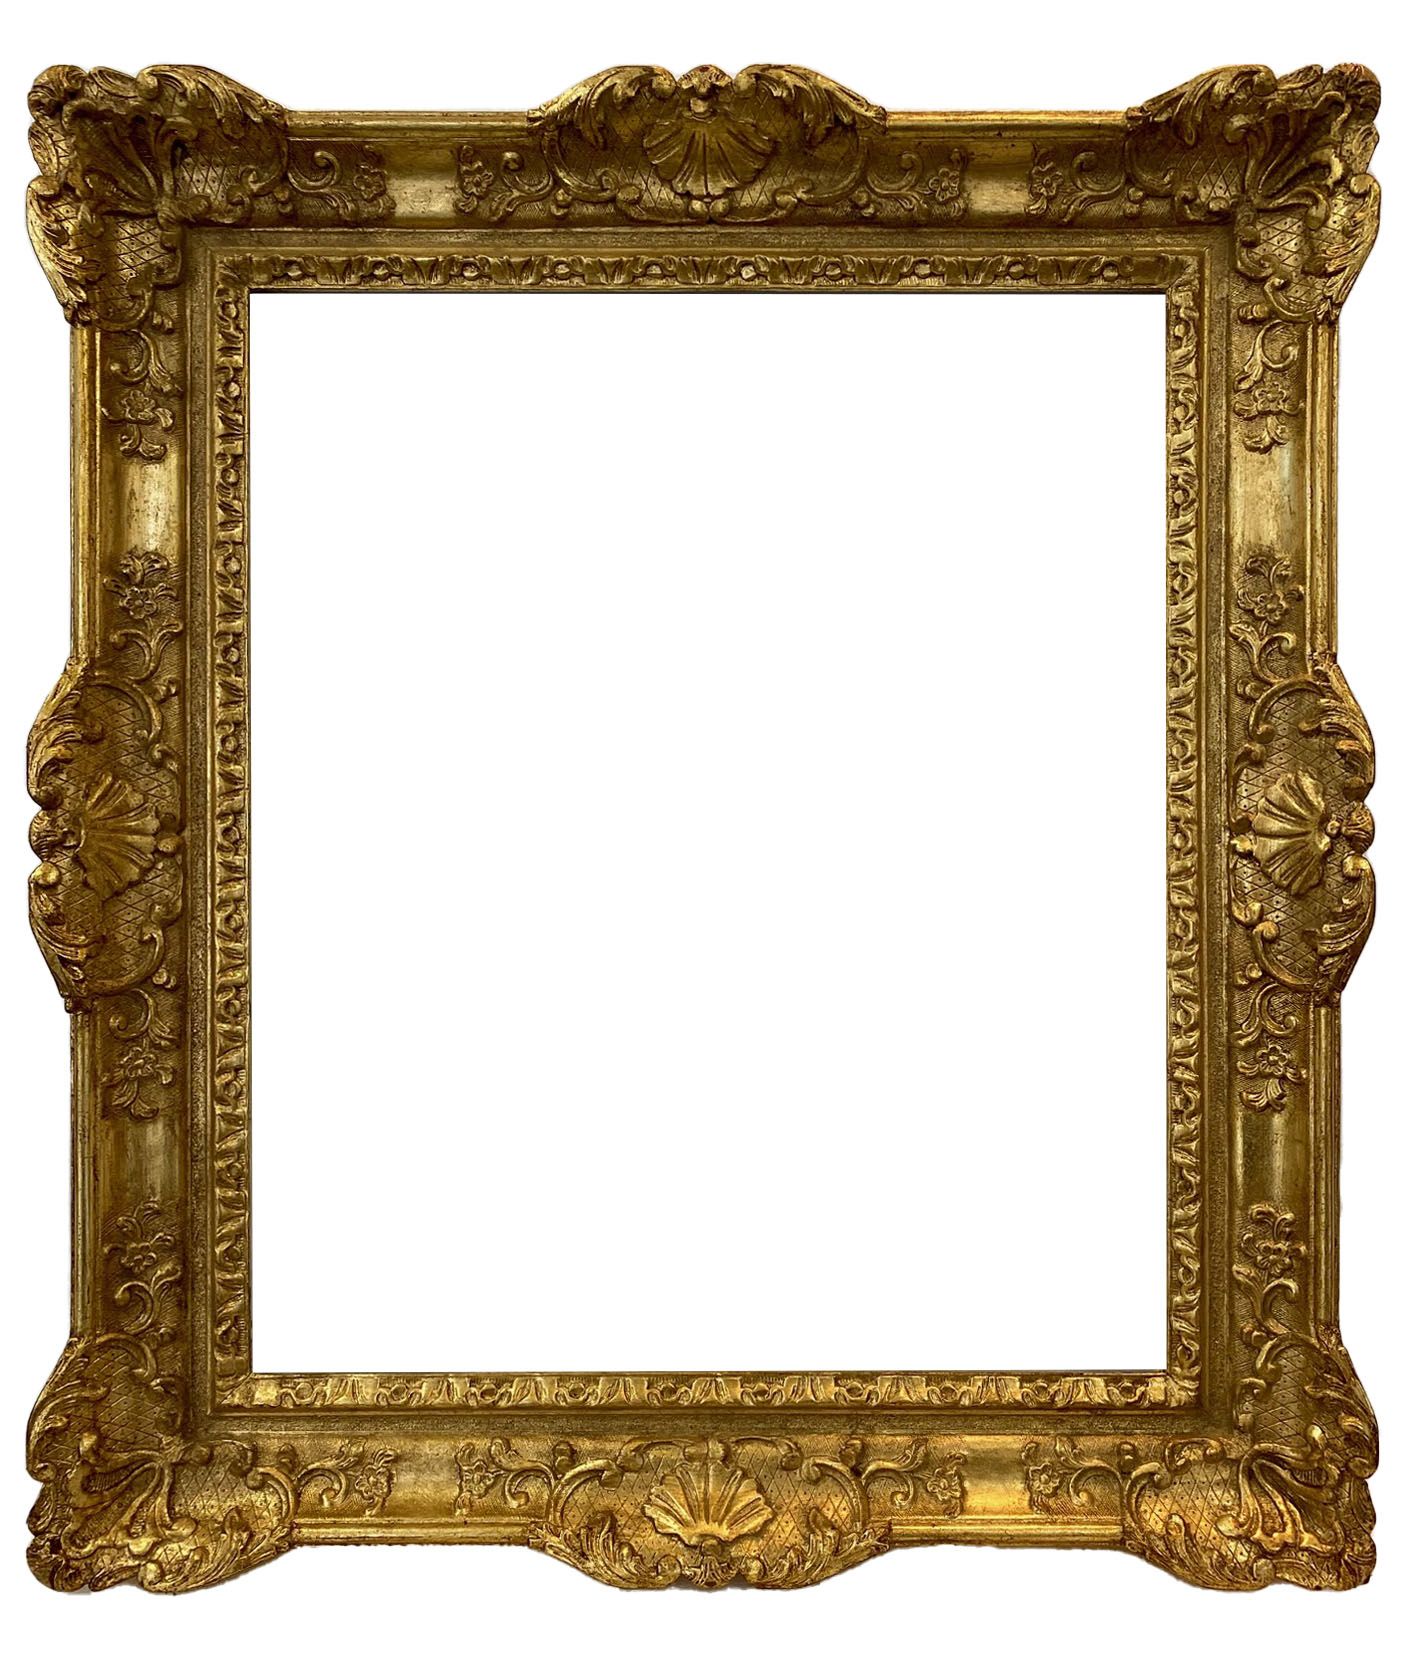 Cadre de style Louis XIV - 51,60 x 43,30 - REF 1377